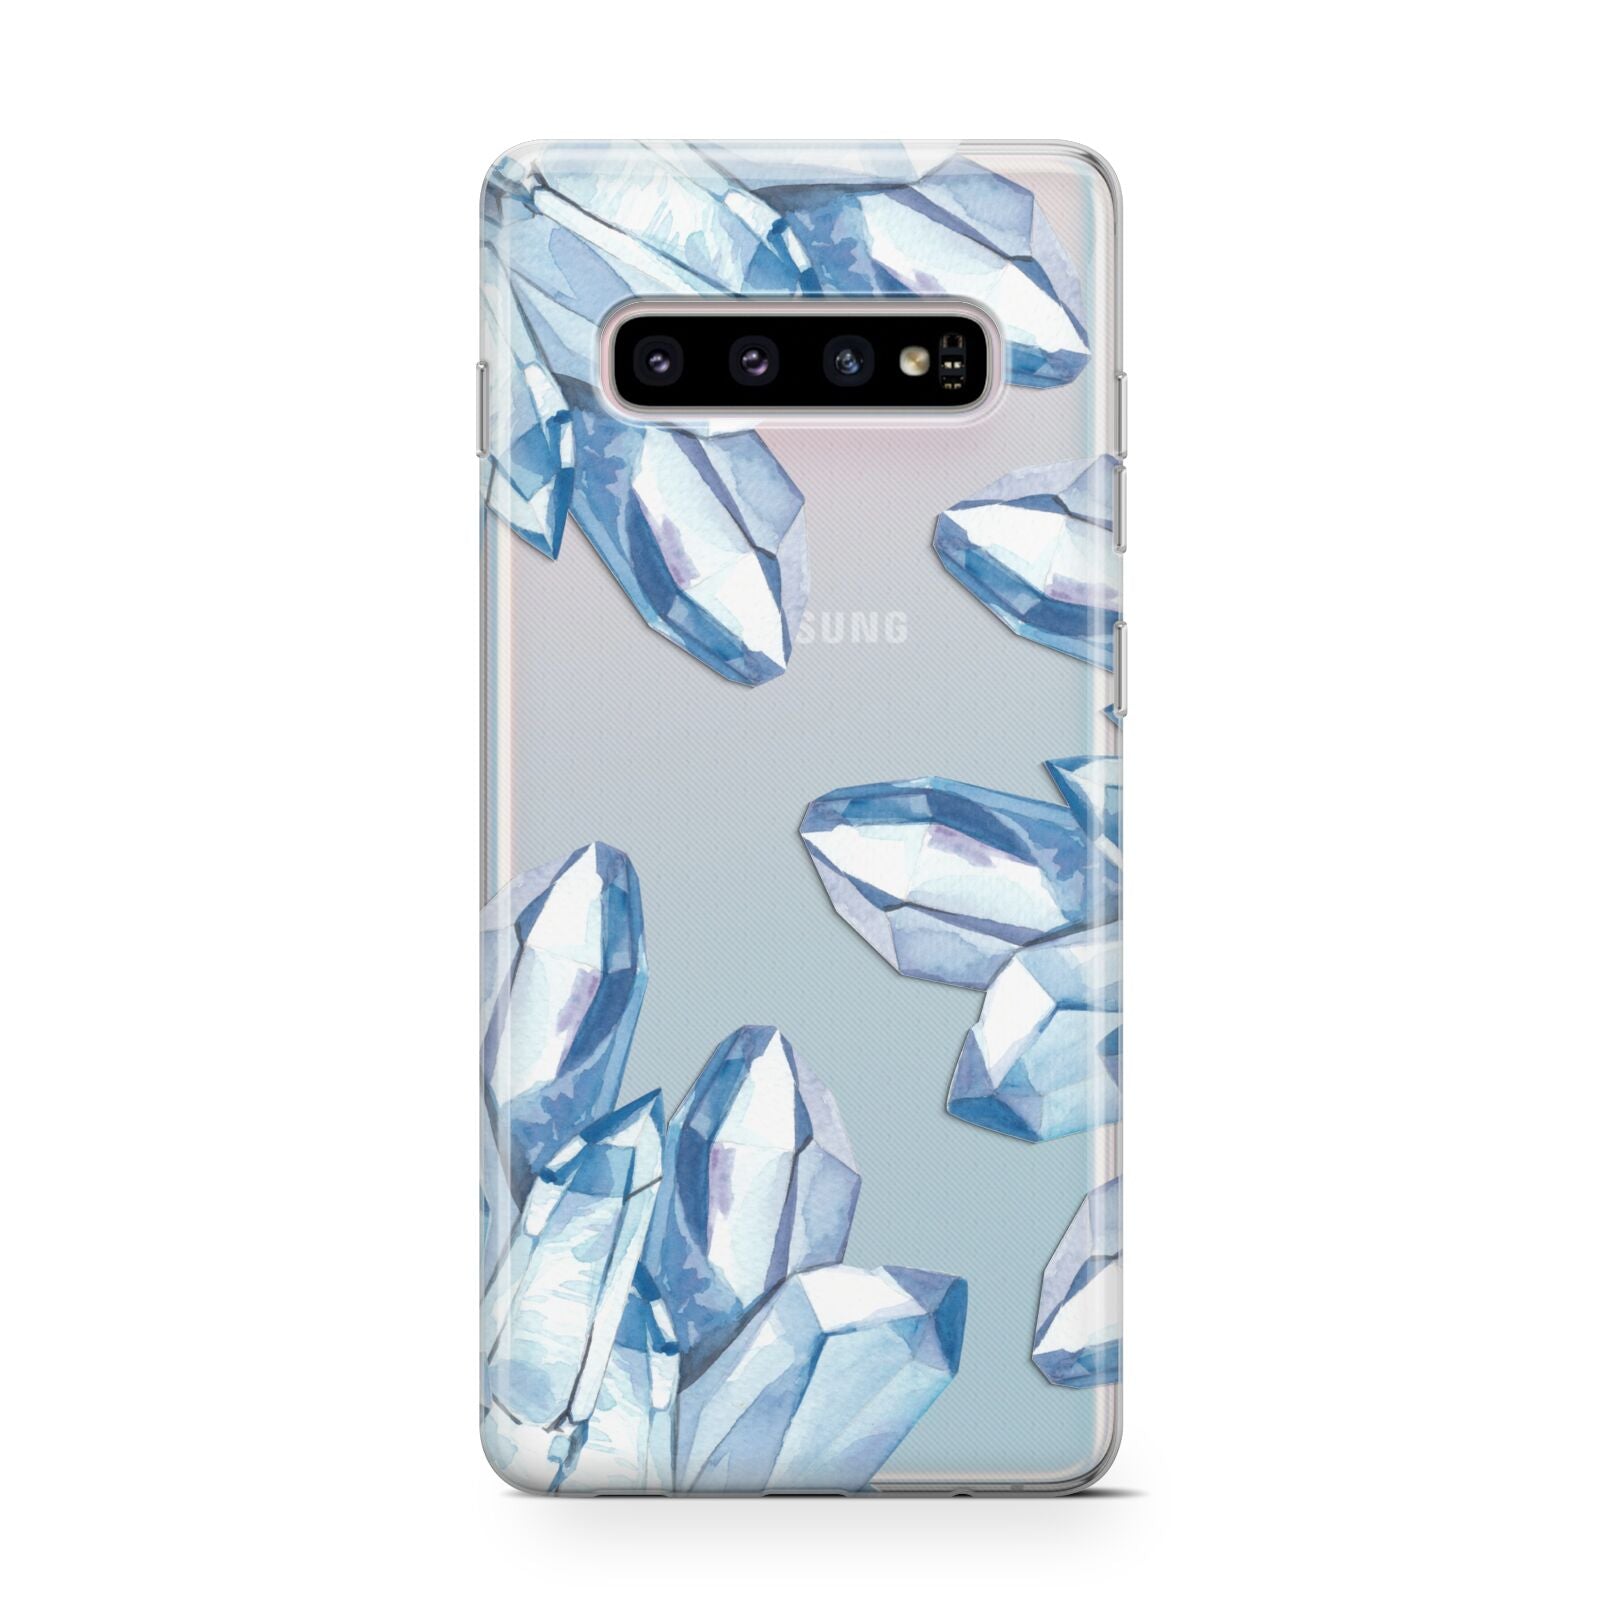 Blue Crystals Samsung Galaxy S10 Case